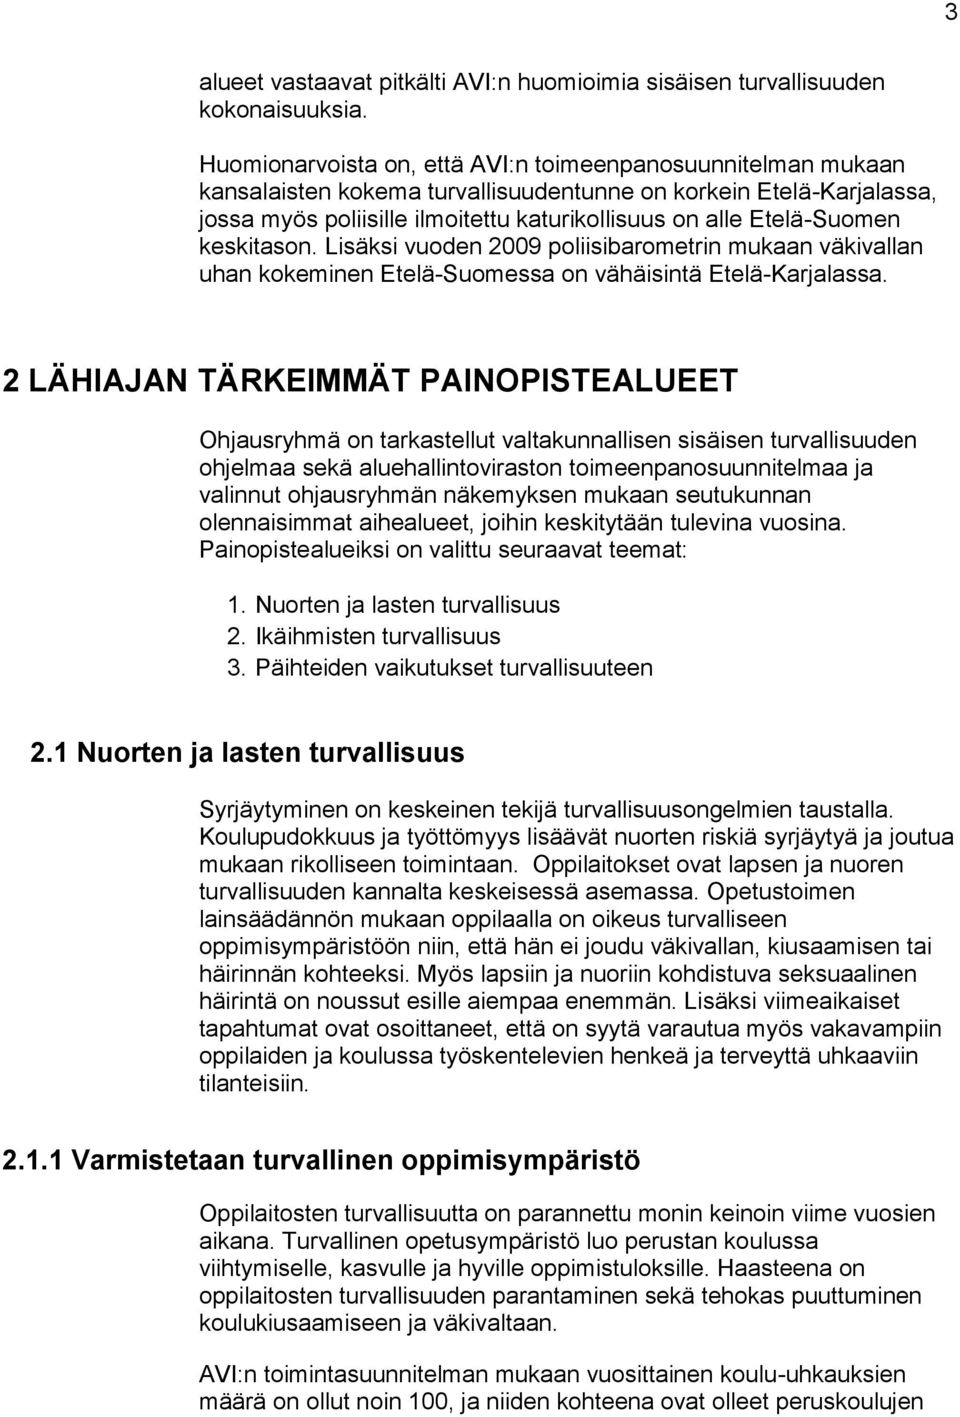 Etelä-Suomen keskitason. Lisäksi vuoden 2009 poliisibarometrin mukaan väkivallan uhan kokeminen Etelä-Suomessa on vähäisintä Etelä-Karjalassa.